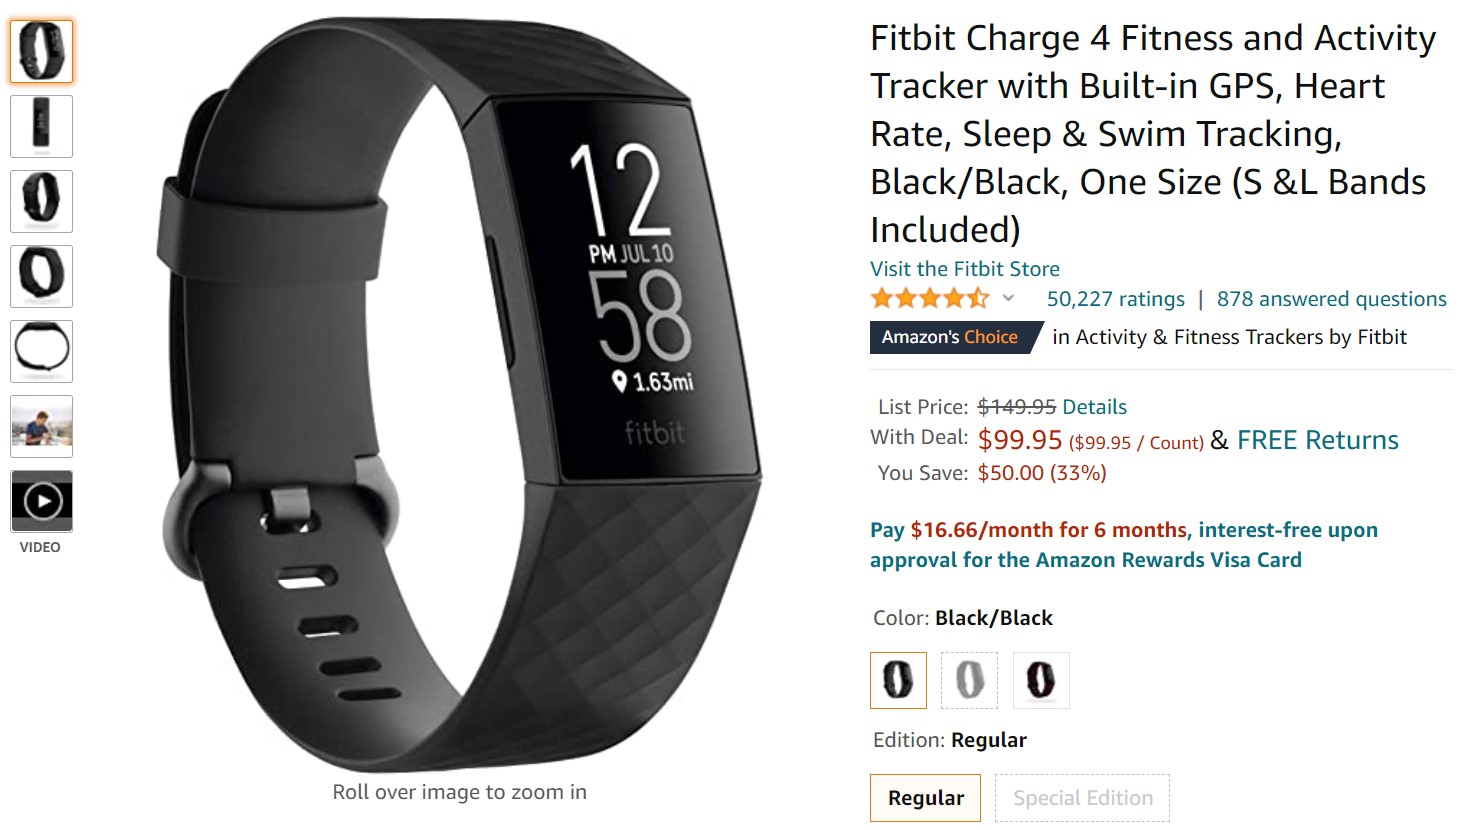 Oferta de Fitbit Charge 4 Amazon